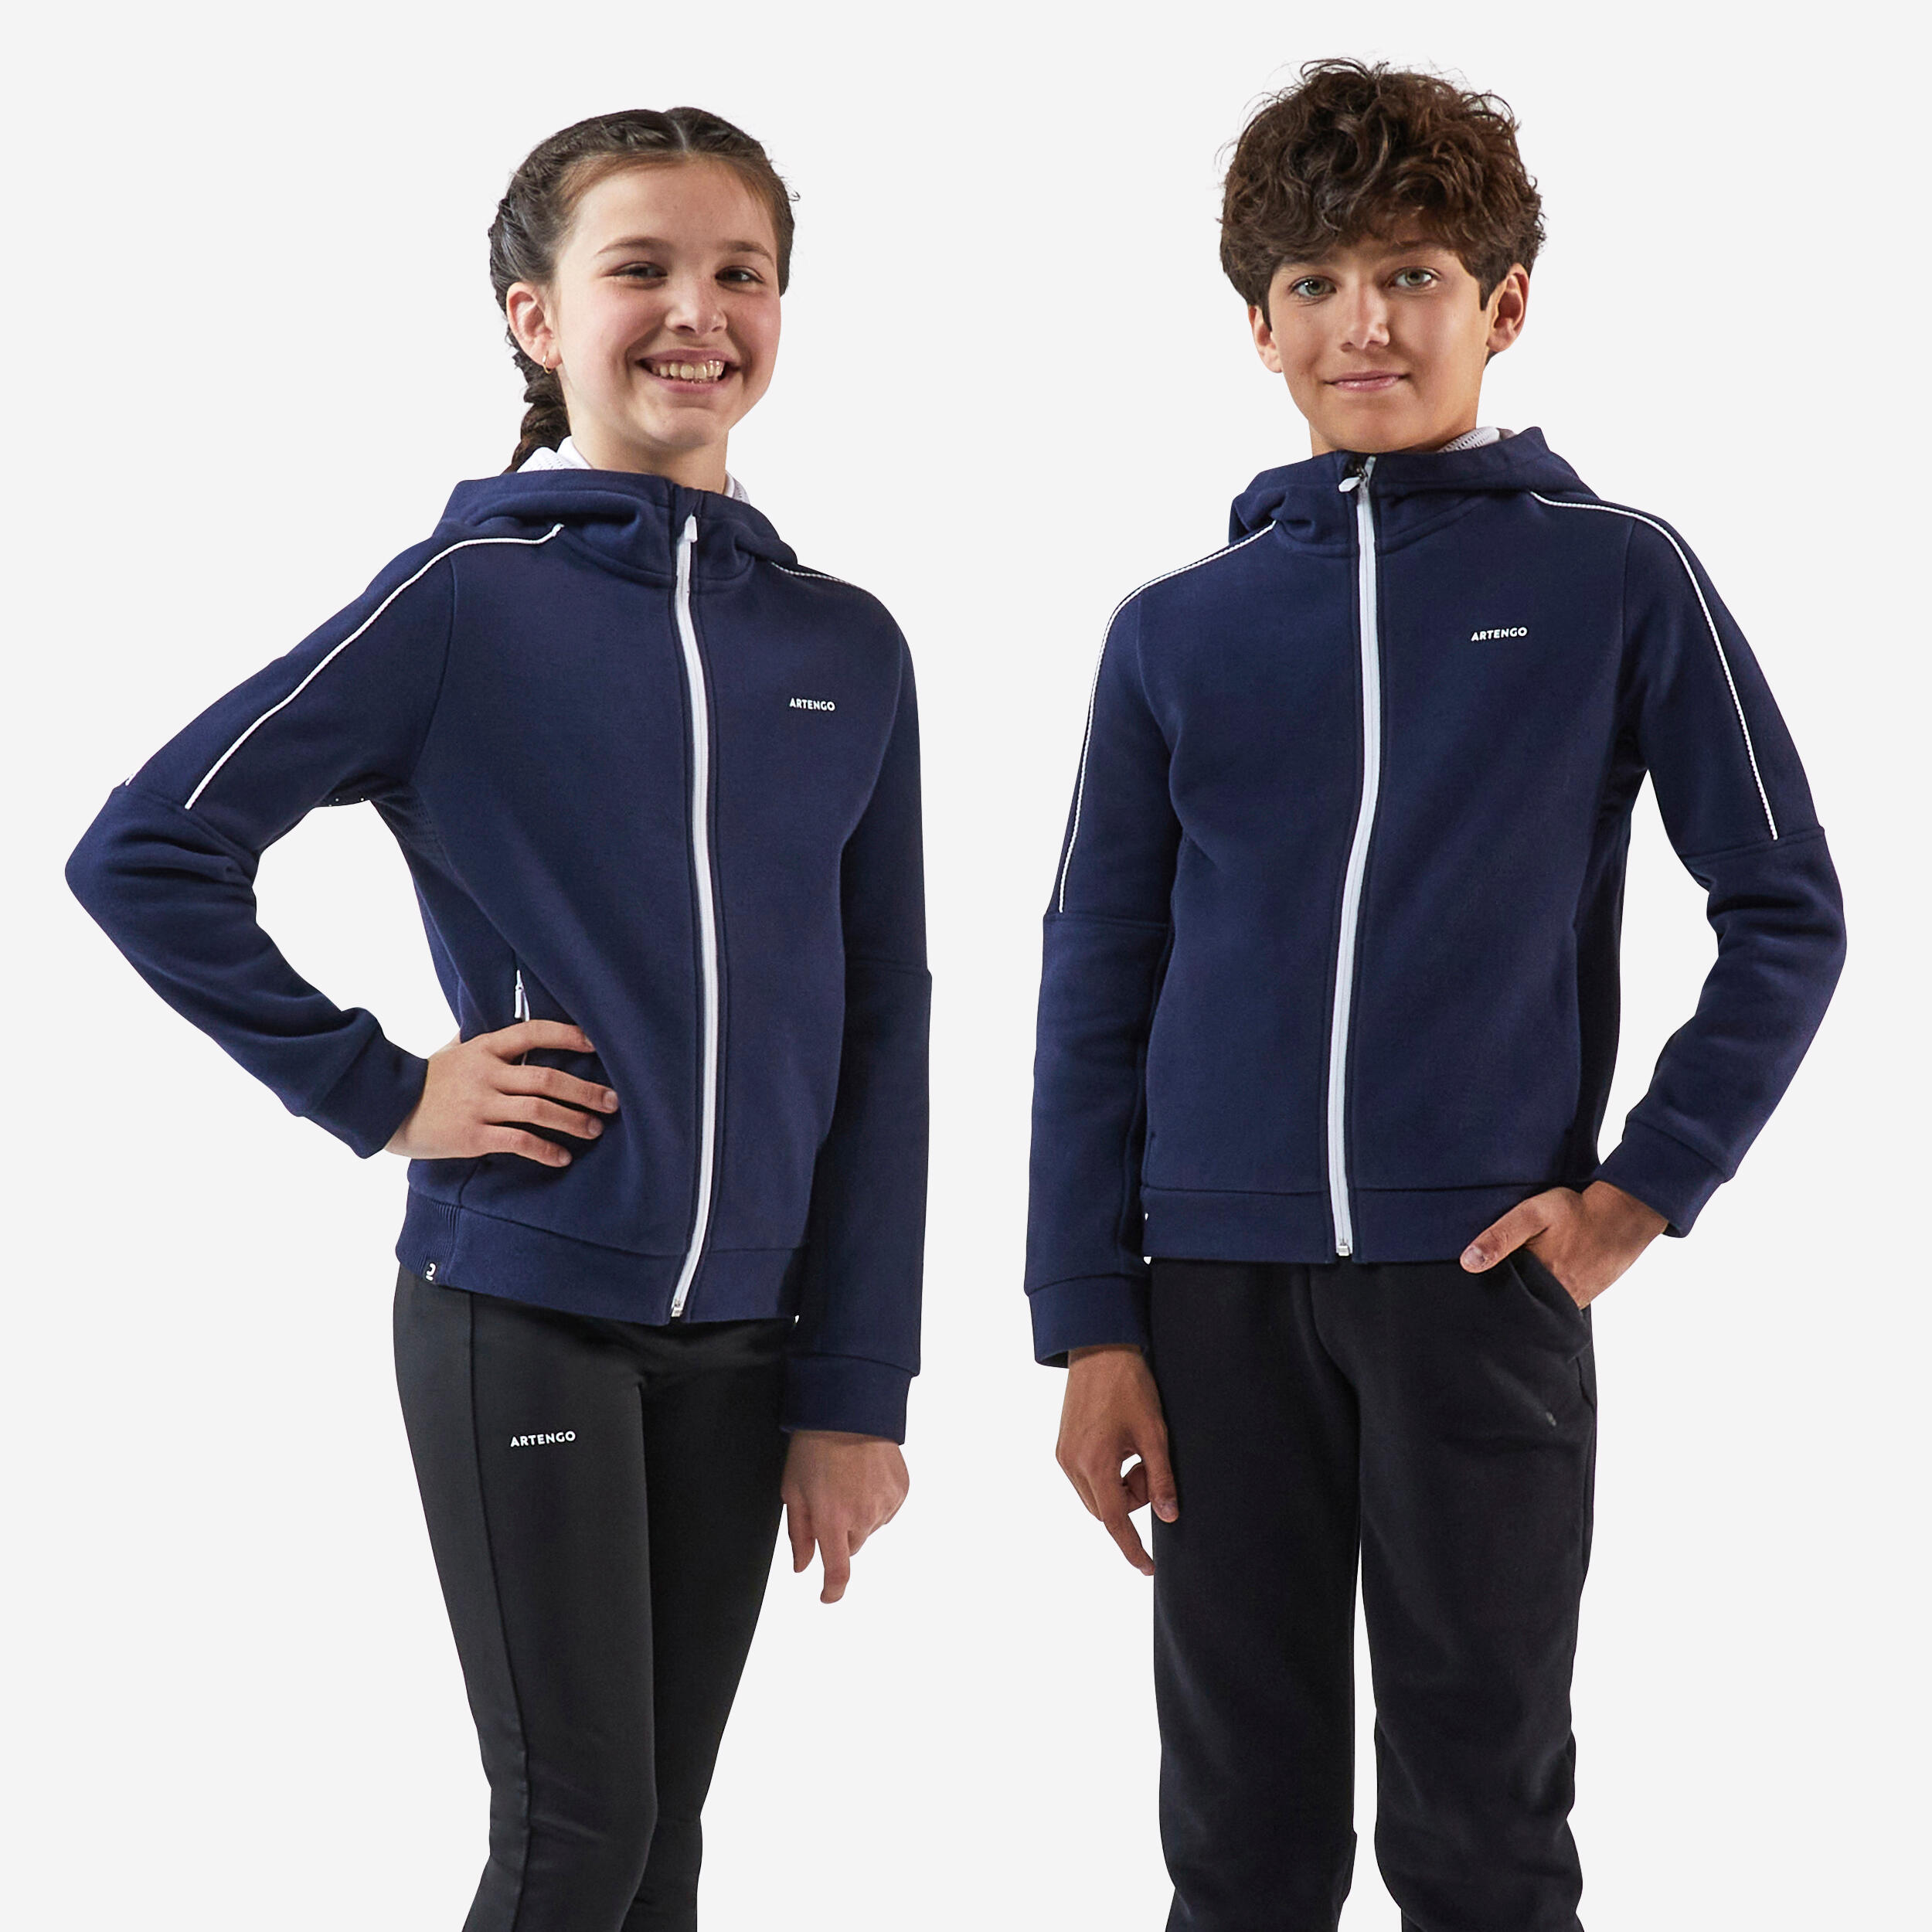 Artengo Kids' Warm Hooded Tennis Jacket - Blue